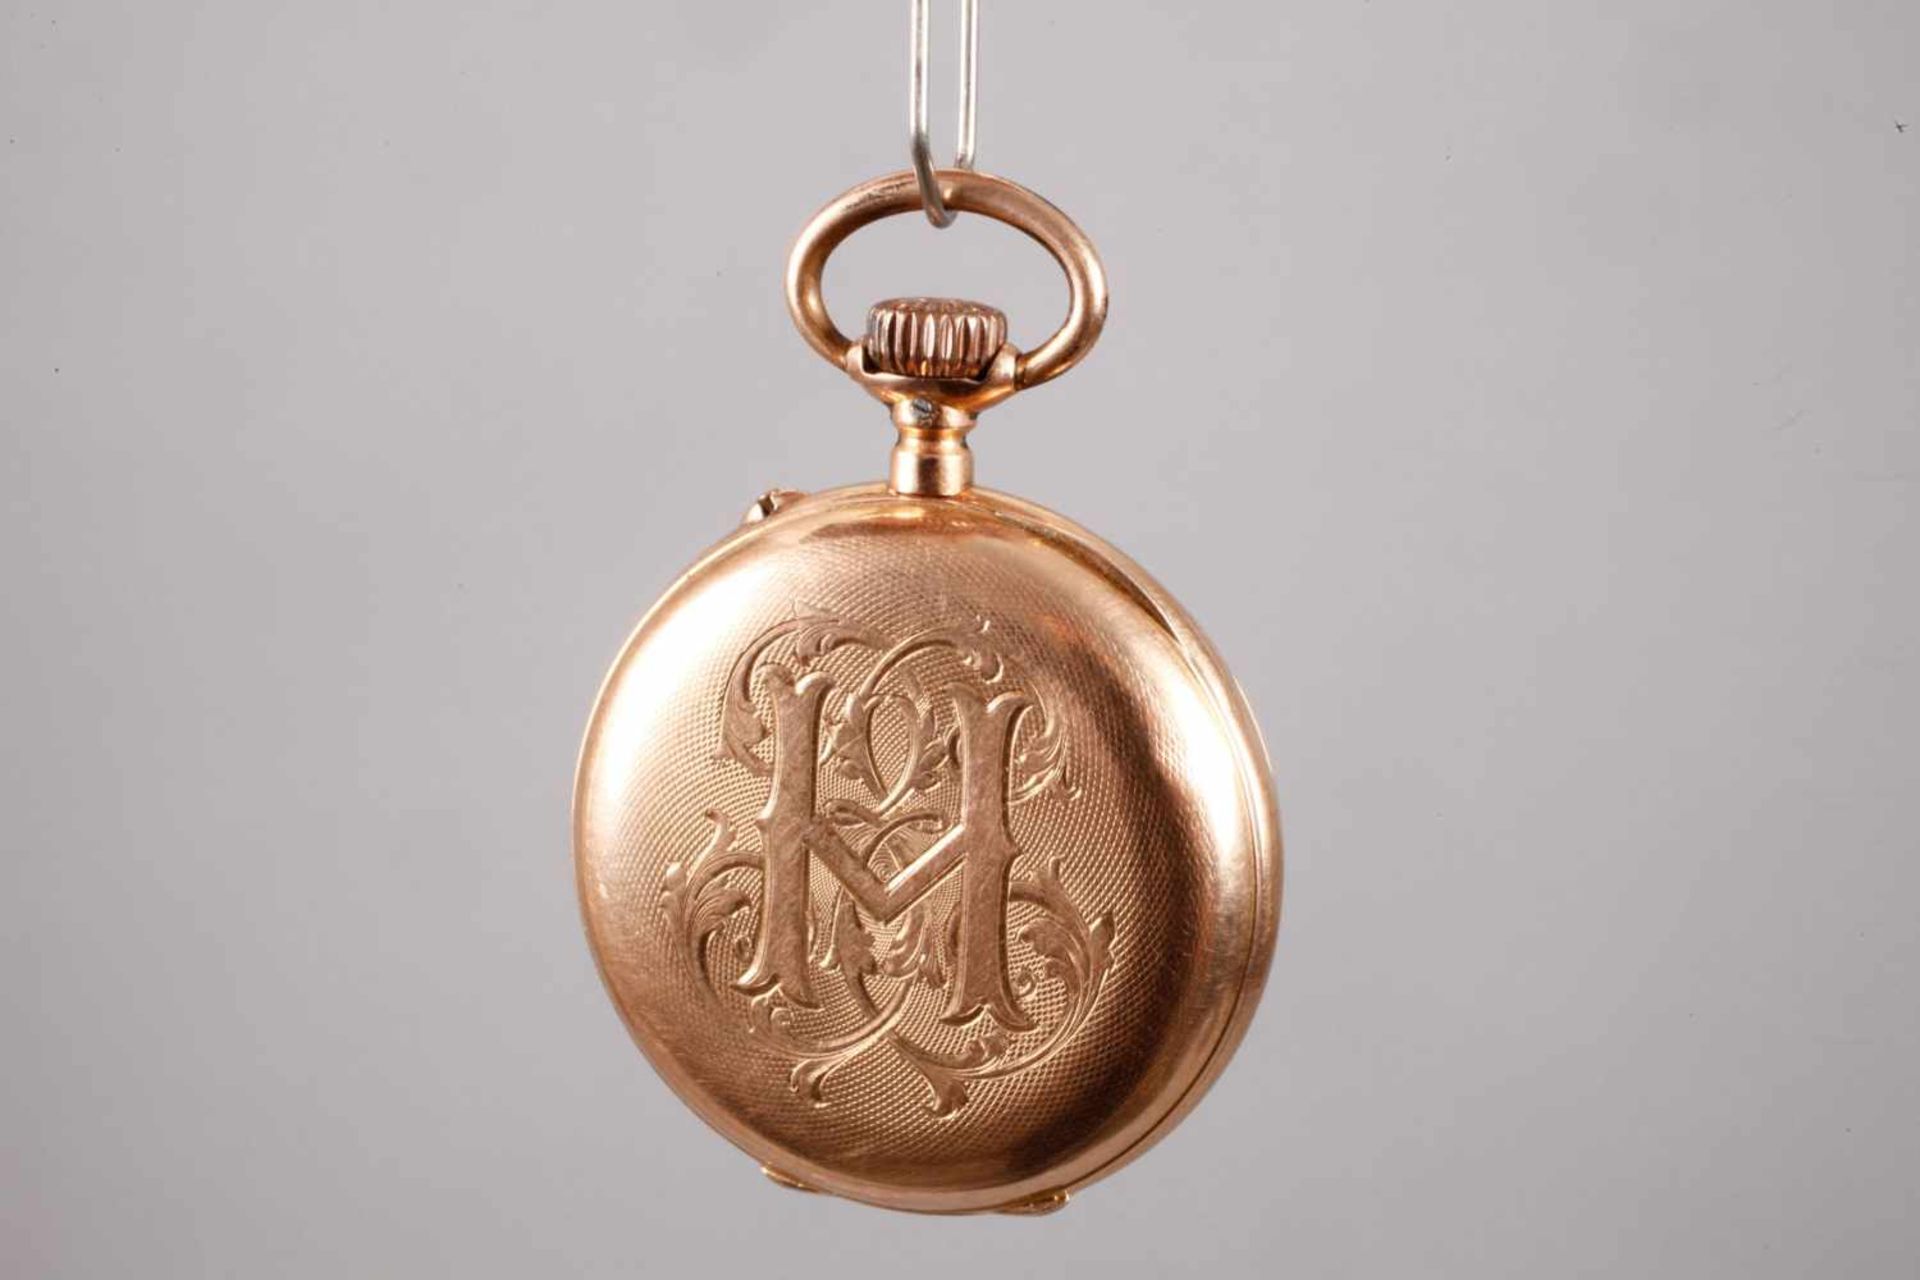 Taschenuhr Longines Gold um 1880, 18 K geprüft,Werk auf Werkplatine gemarkt, Ankergang, makelloses - Bild 2 aus 4